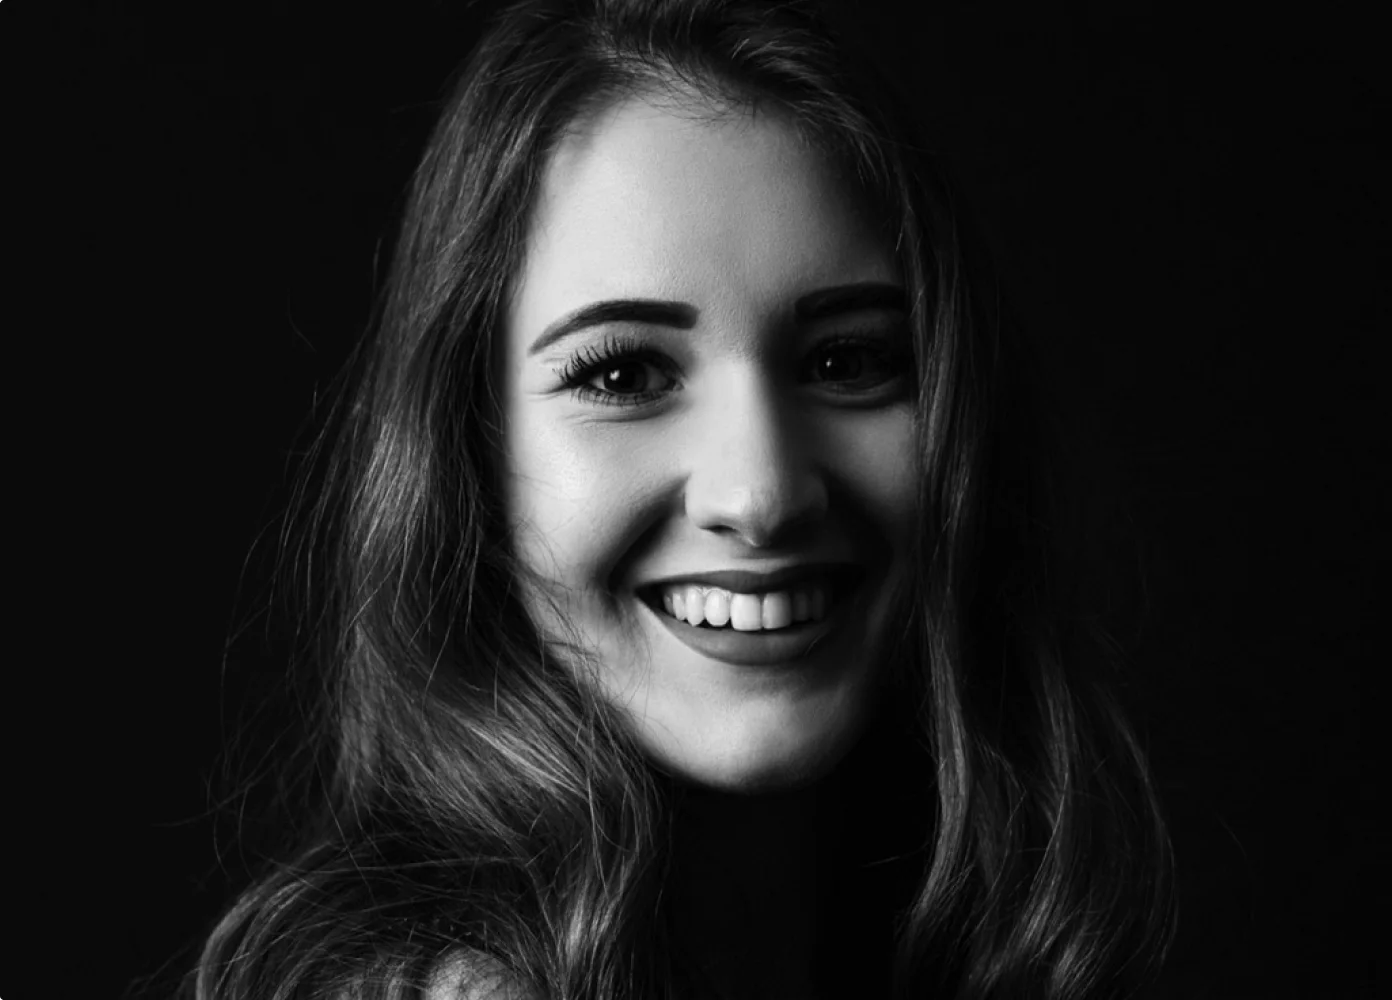 Lächelnde Frau mit langen Haaren in Schwarz-Weiß-Fotografie